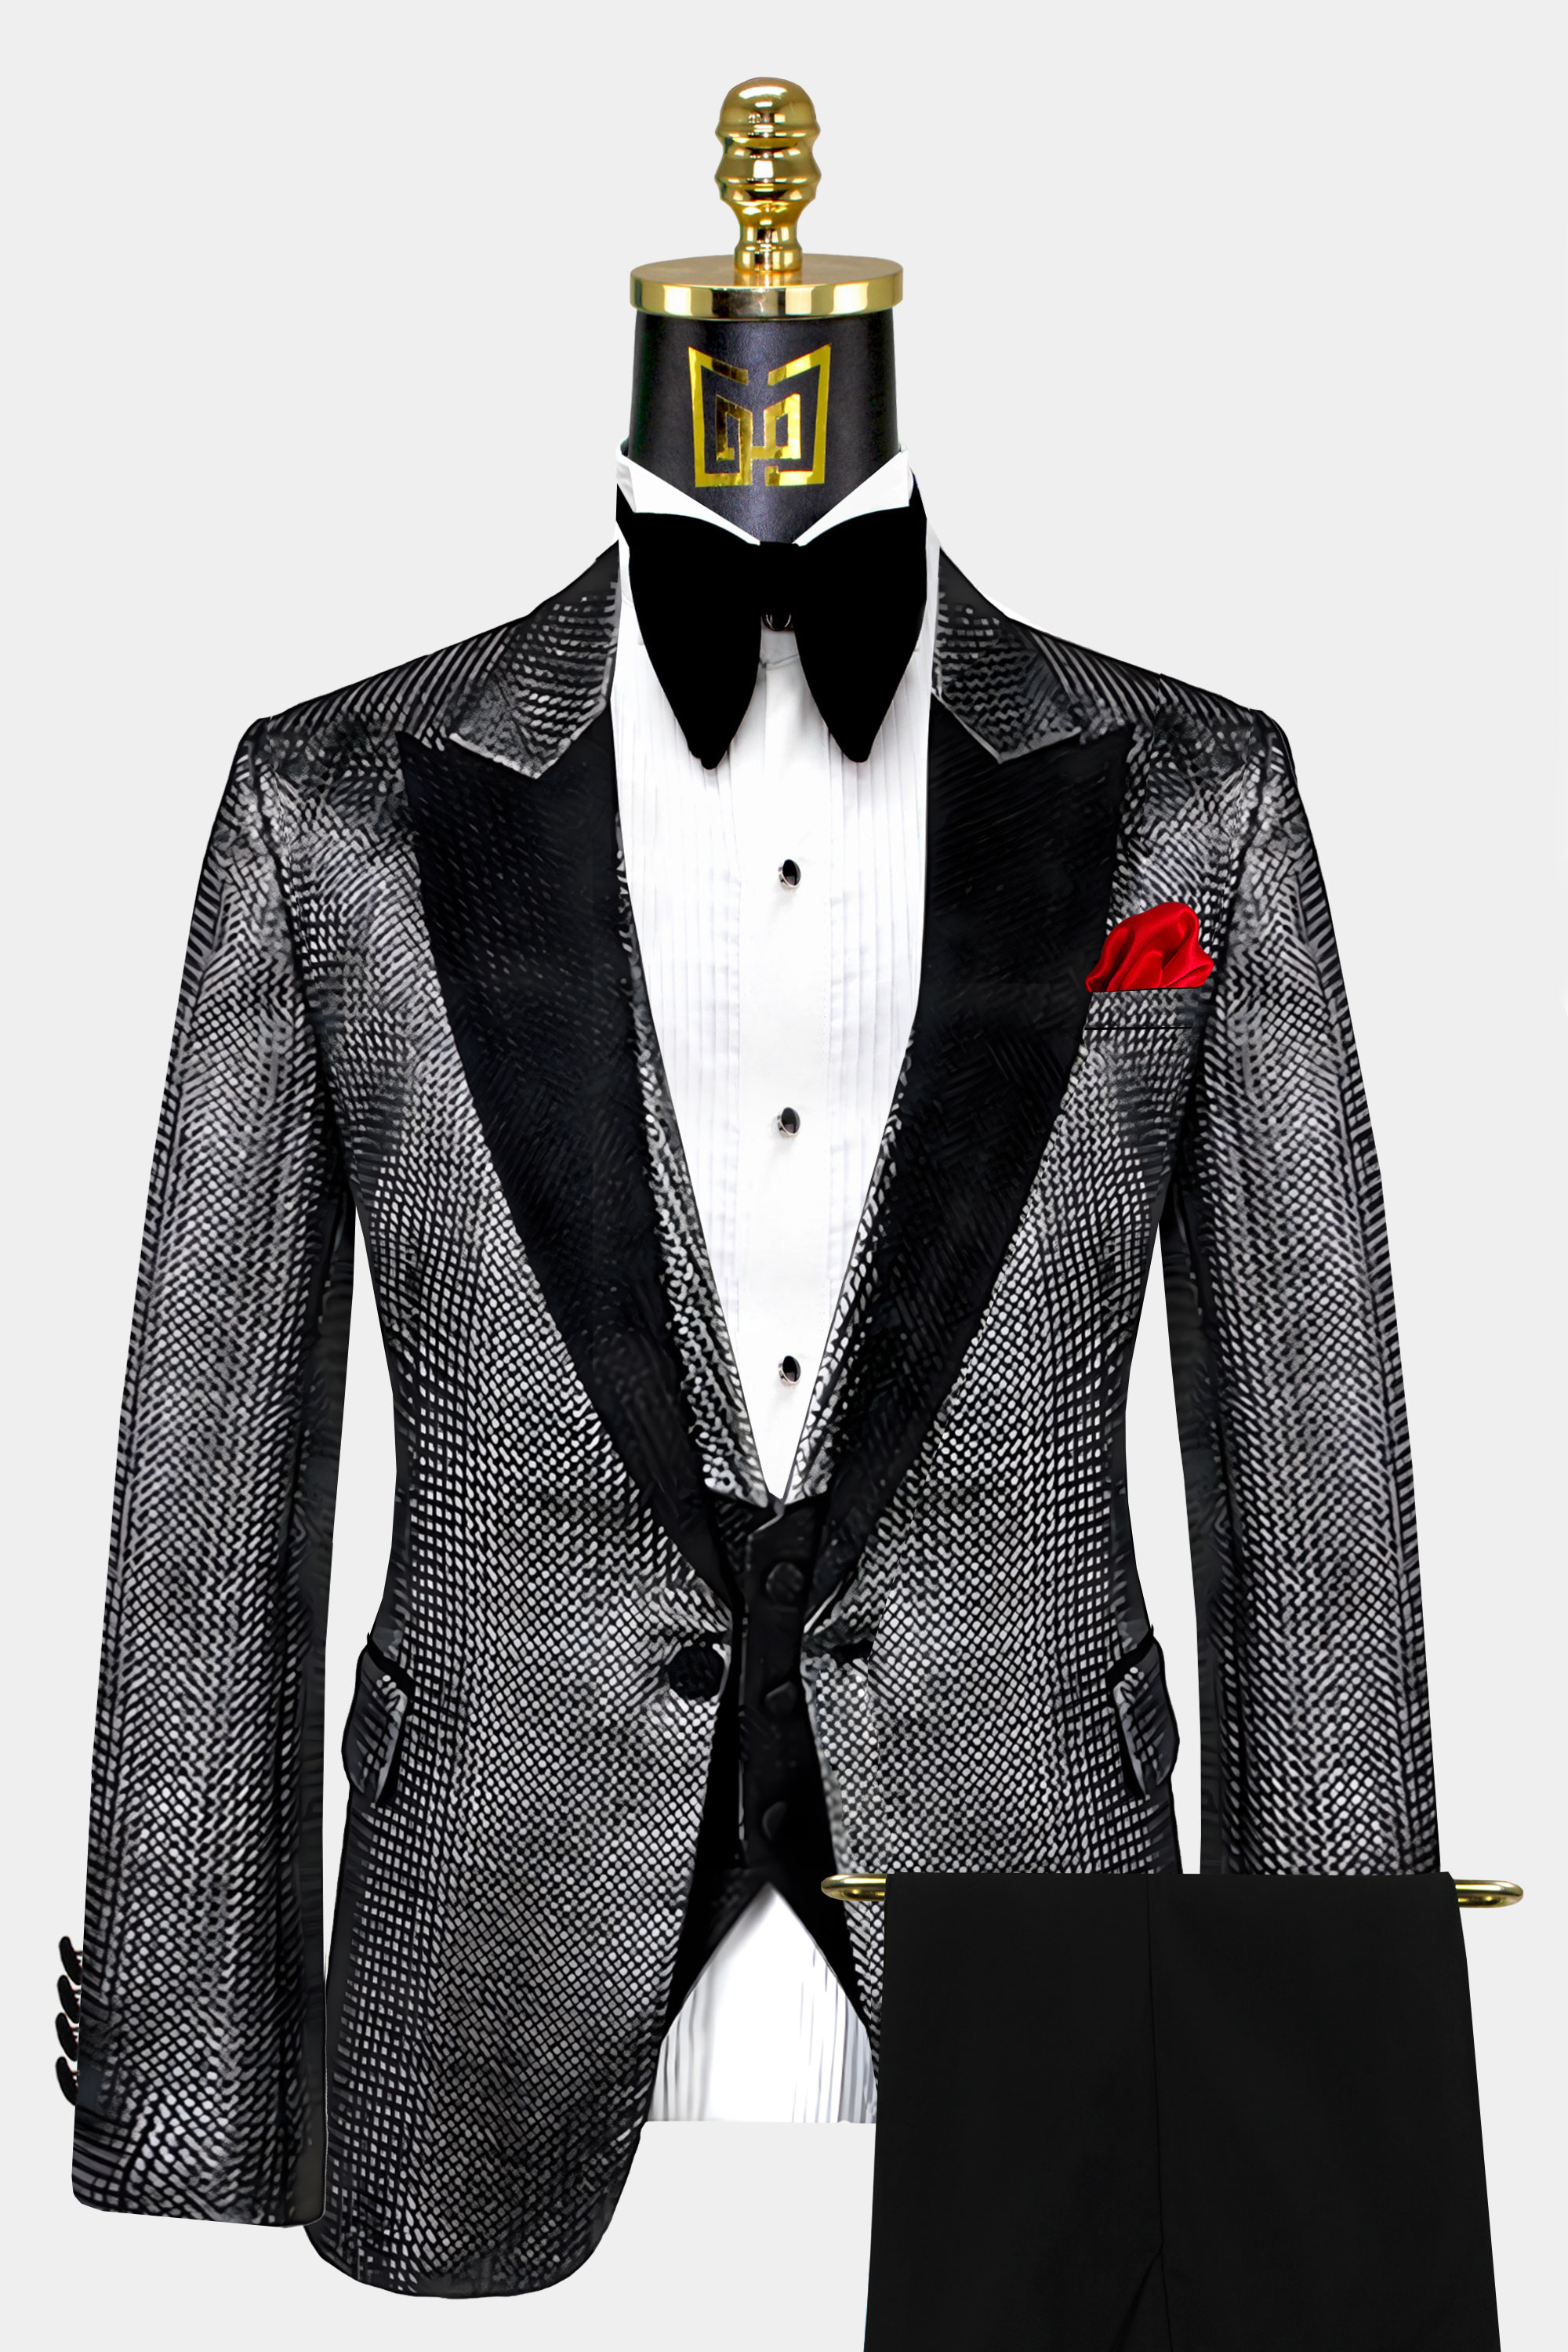 Mens-Charcoal-Grey-Tuxedo-Prom-Groom-Wedding-Suit-from-Gentlemansguru.com